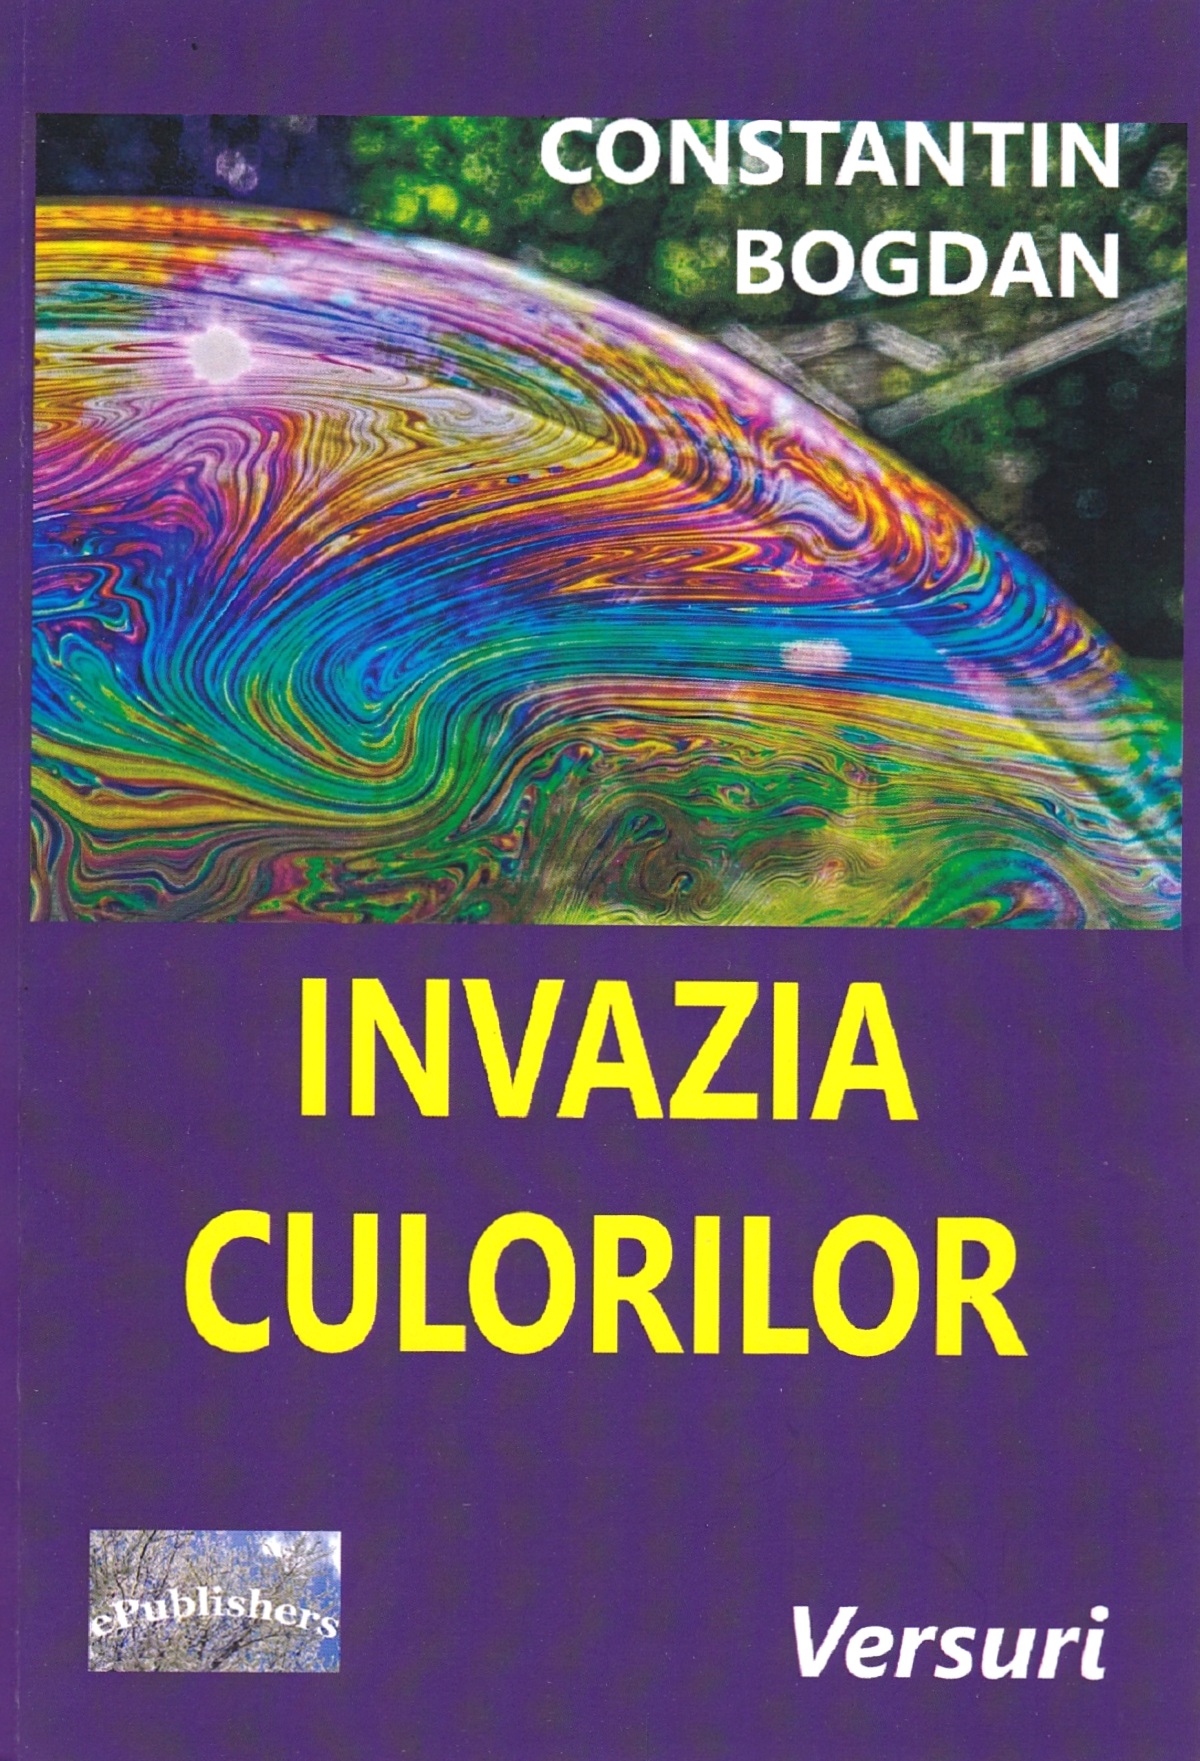 Invazia culorilor - Constantin Bogdan